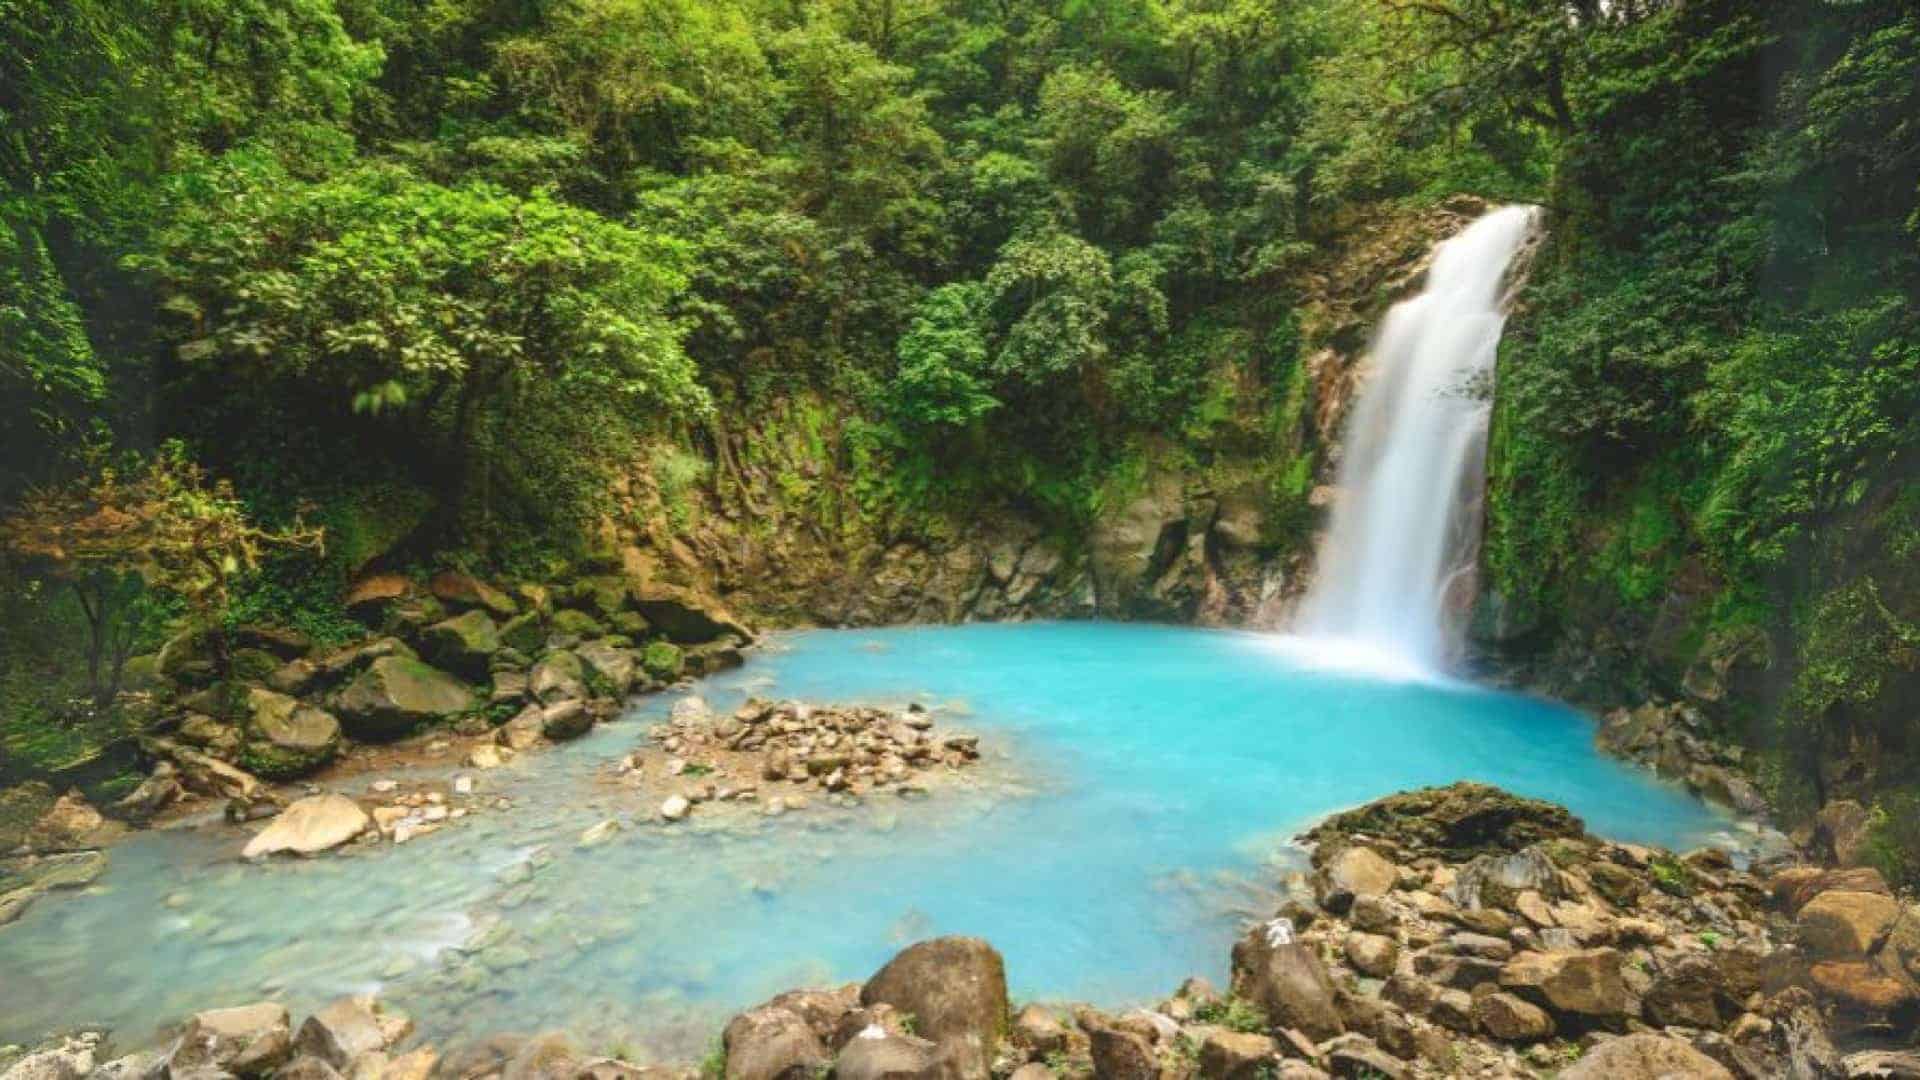 The Rio Celeste Waterfall in Costa Rica